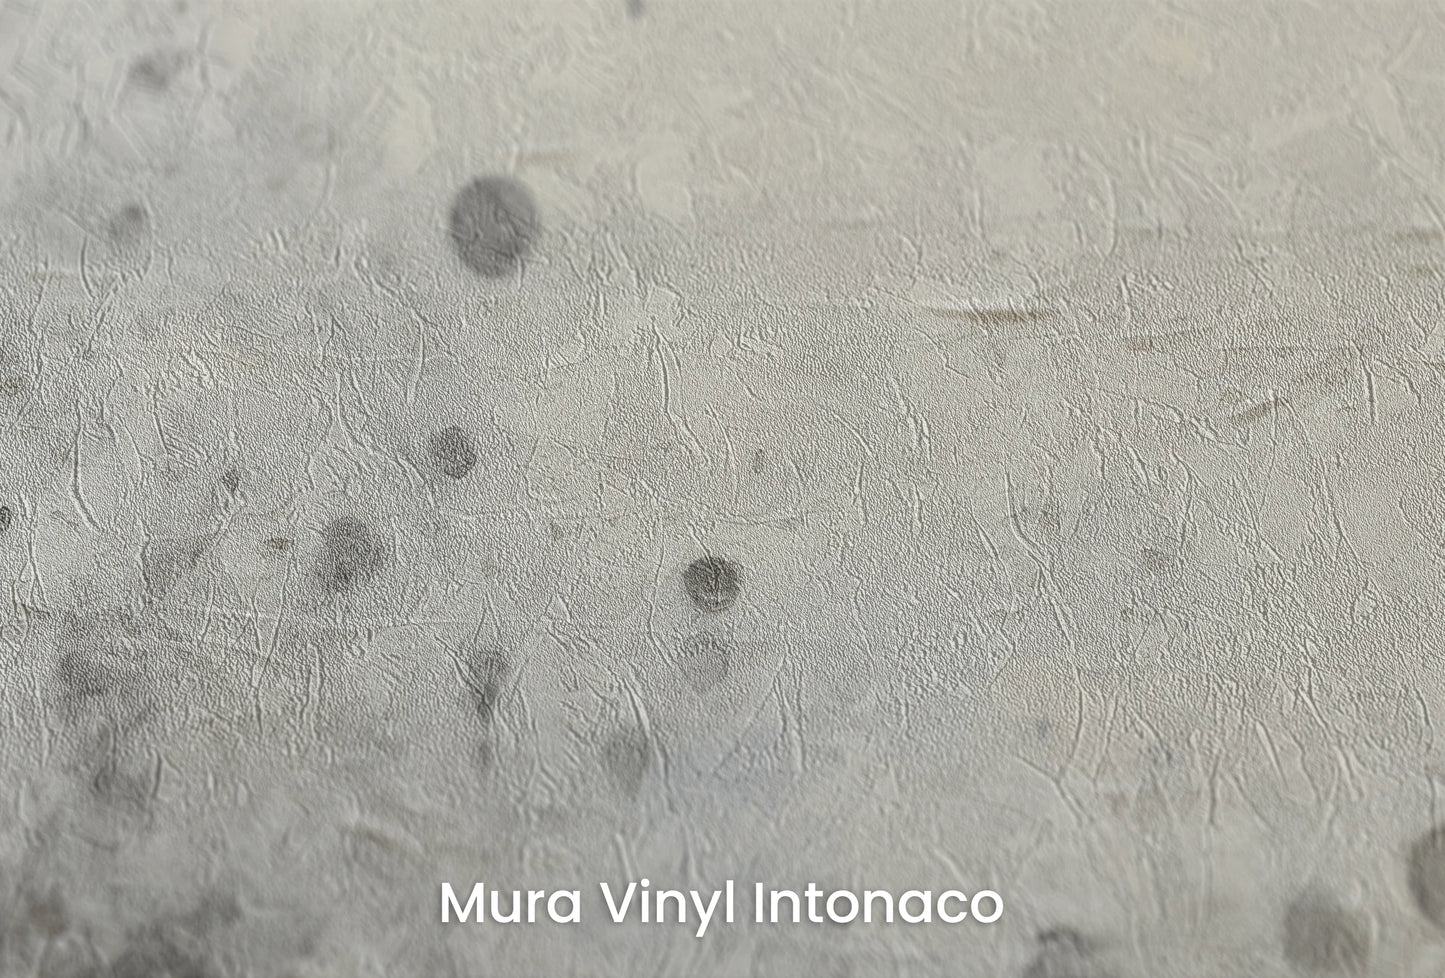 Zbliżenie na artystyczną fototapetę o nazwie Uranian Chill na podłożu Mura Vinyl Intonaco - struktura tartego tynku.